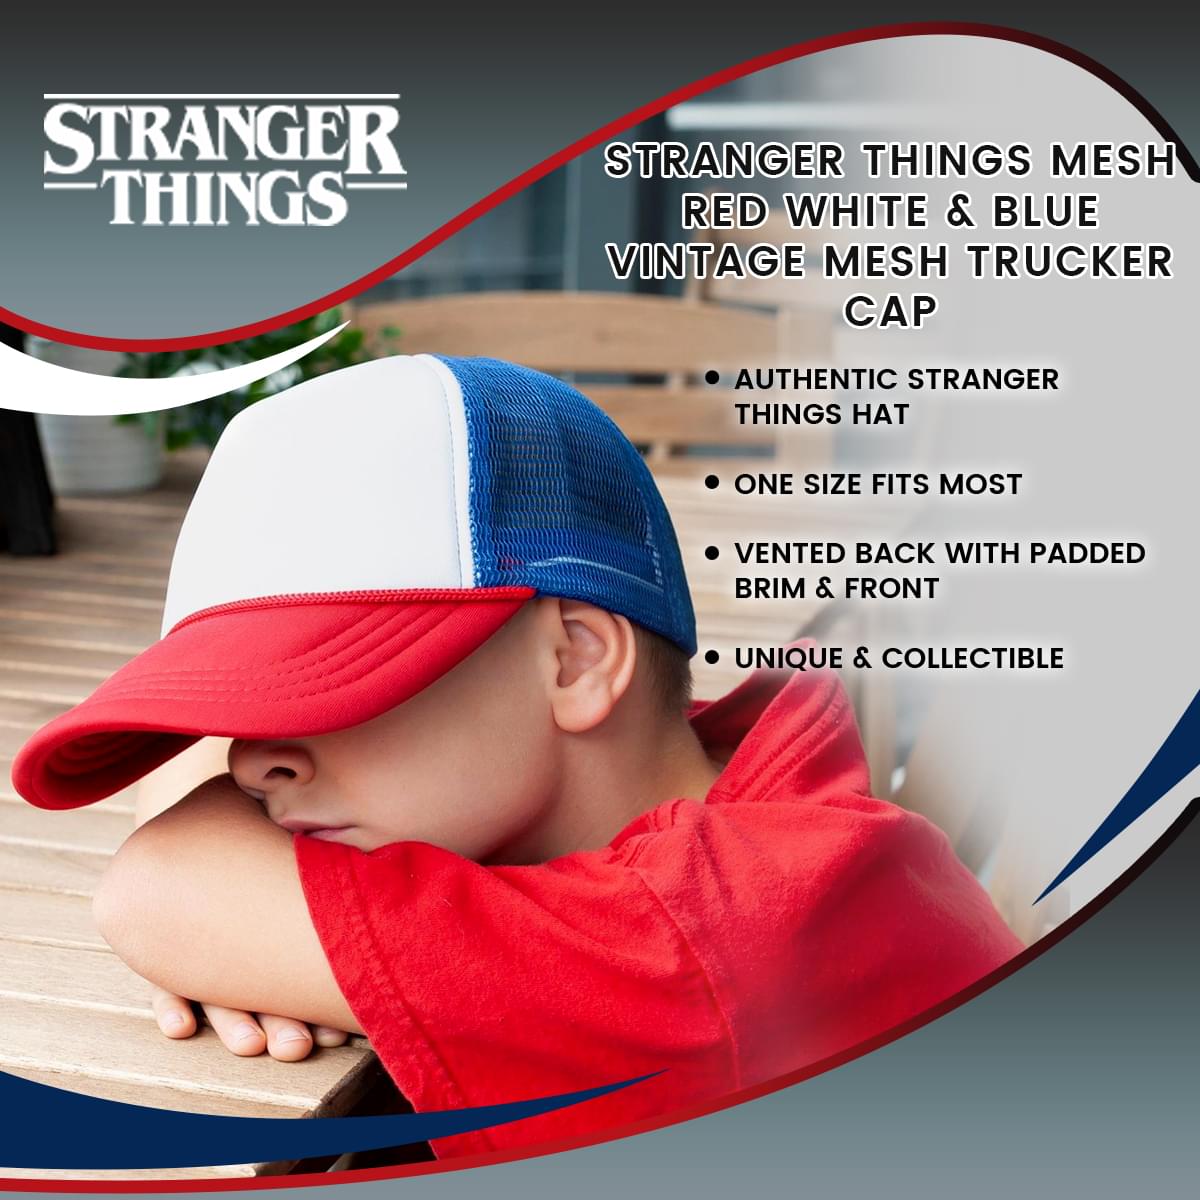 Stranger Things Mesh Red White & Blue Vintage Mesh Trucker Cap